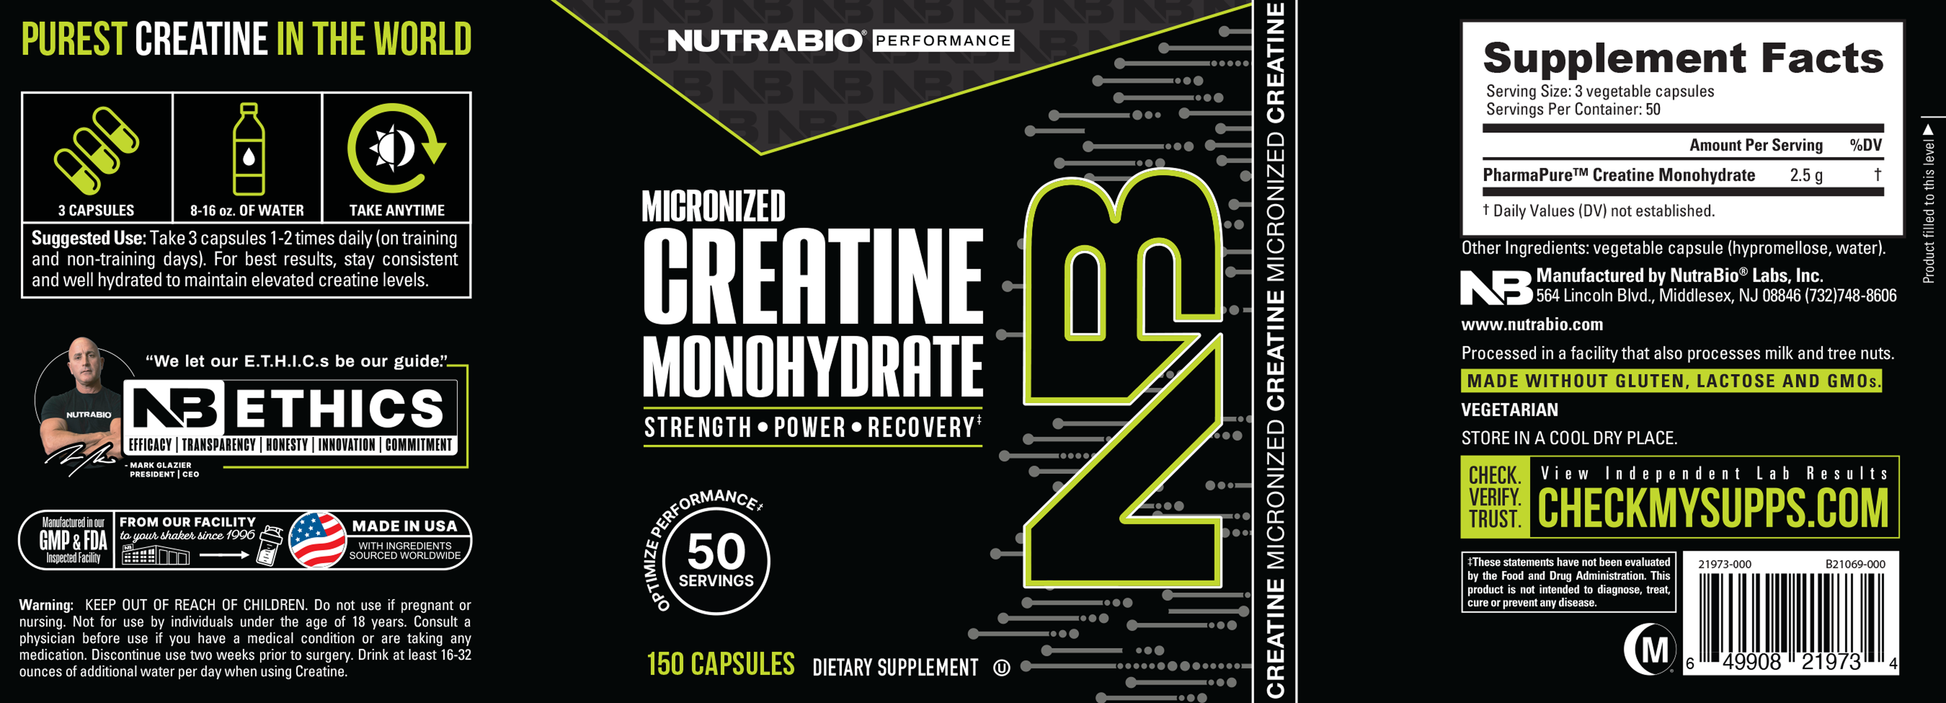 Creatine Monohydrate Capsules Label